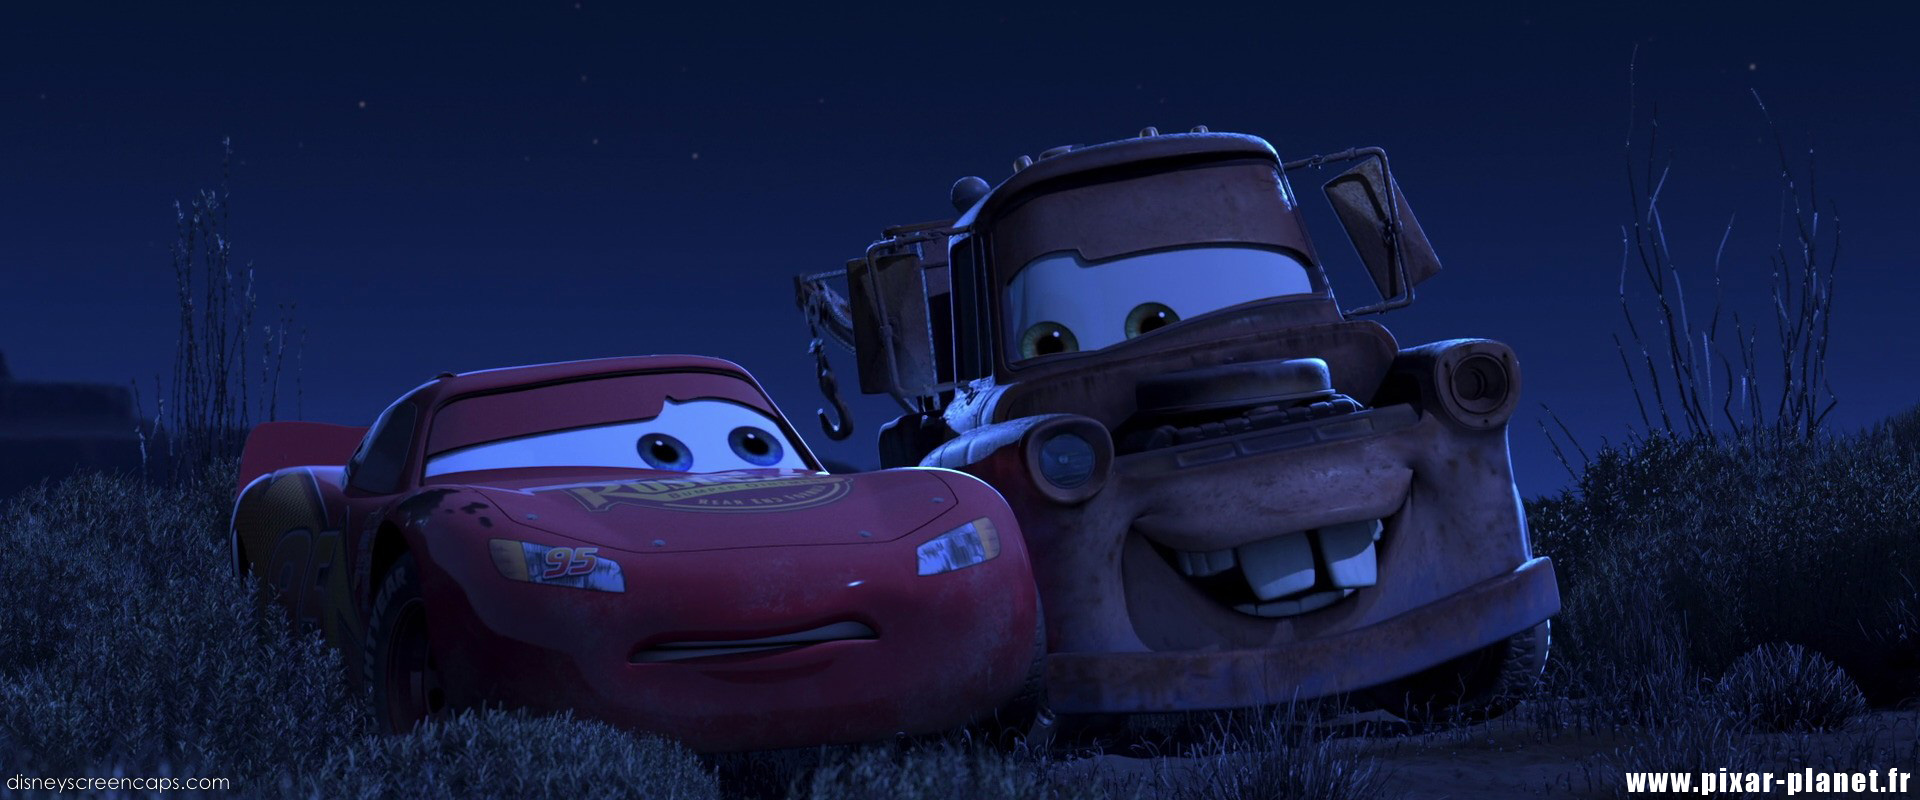 Pixar Cars Quotes.